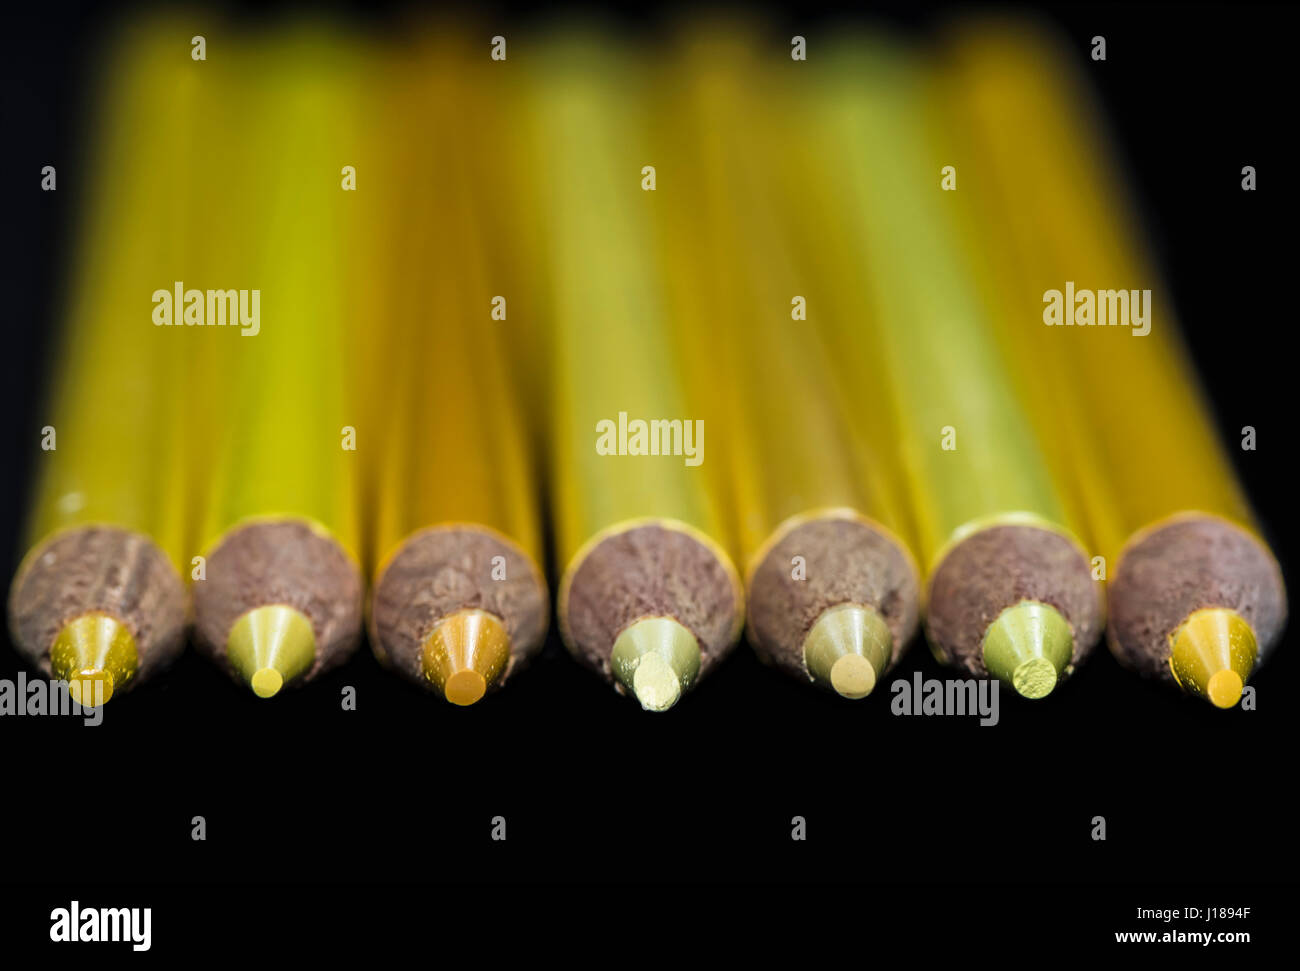 7 crayons de couleur jaune de différentes teintes et nuances avec un fond noir. Choisies, seulement sur le crayon points. Banque D'Images